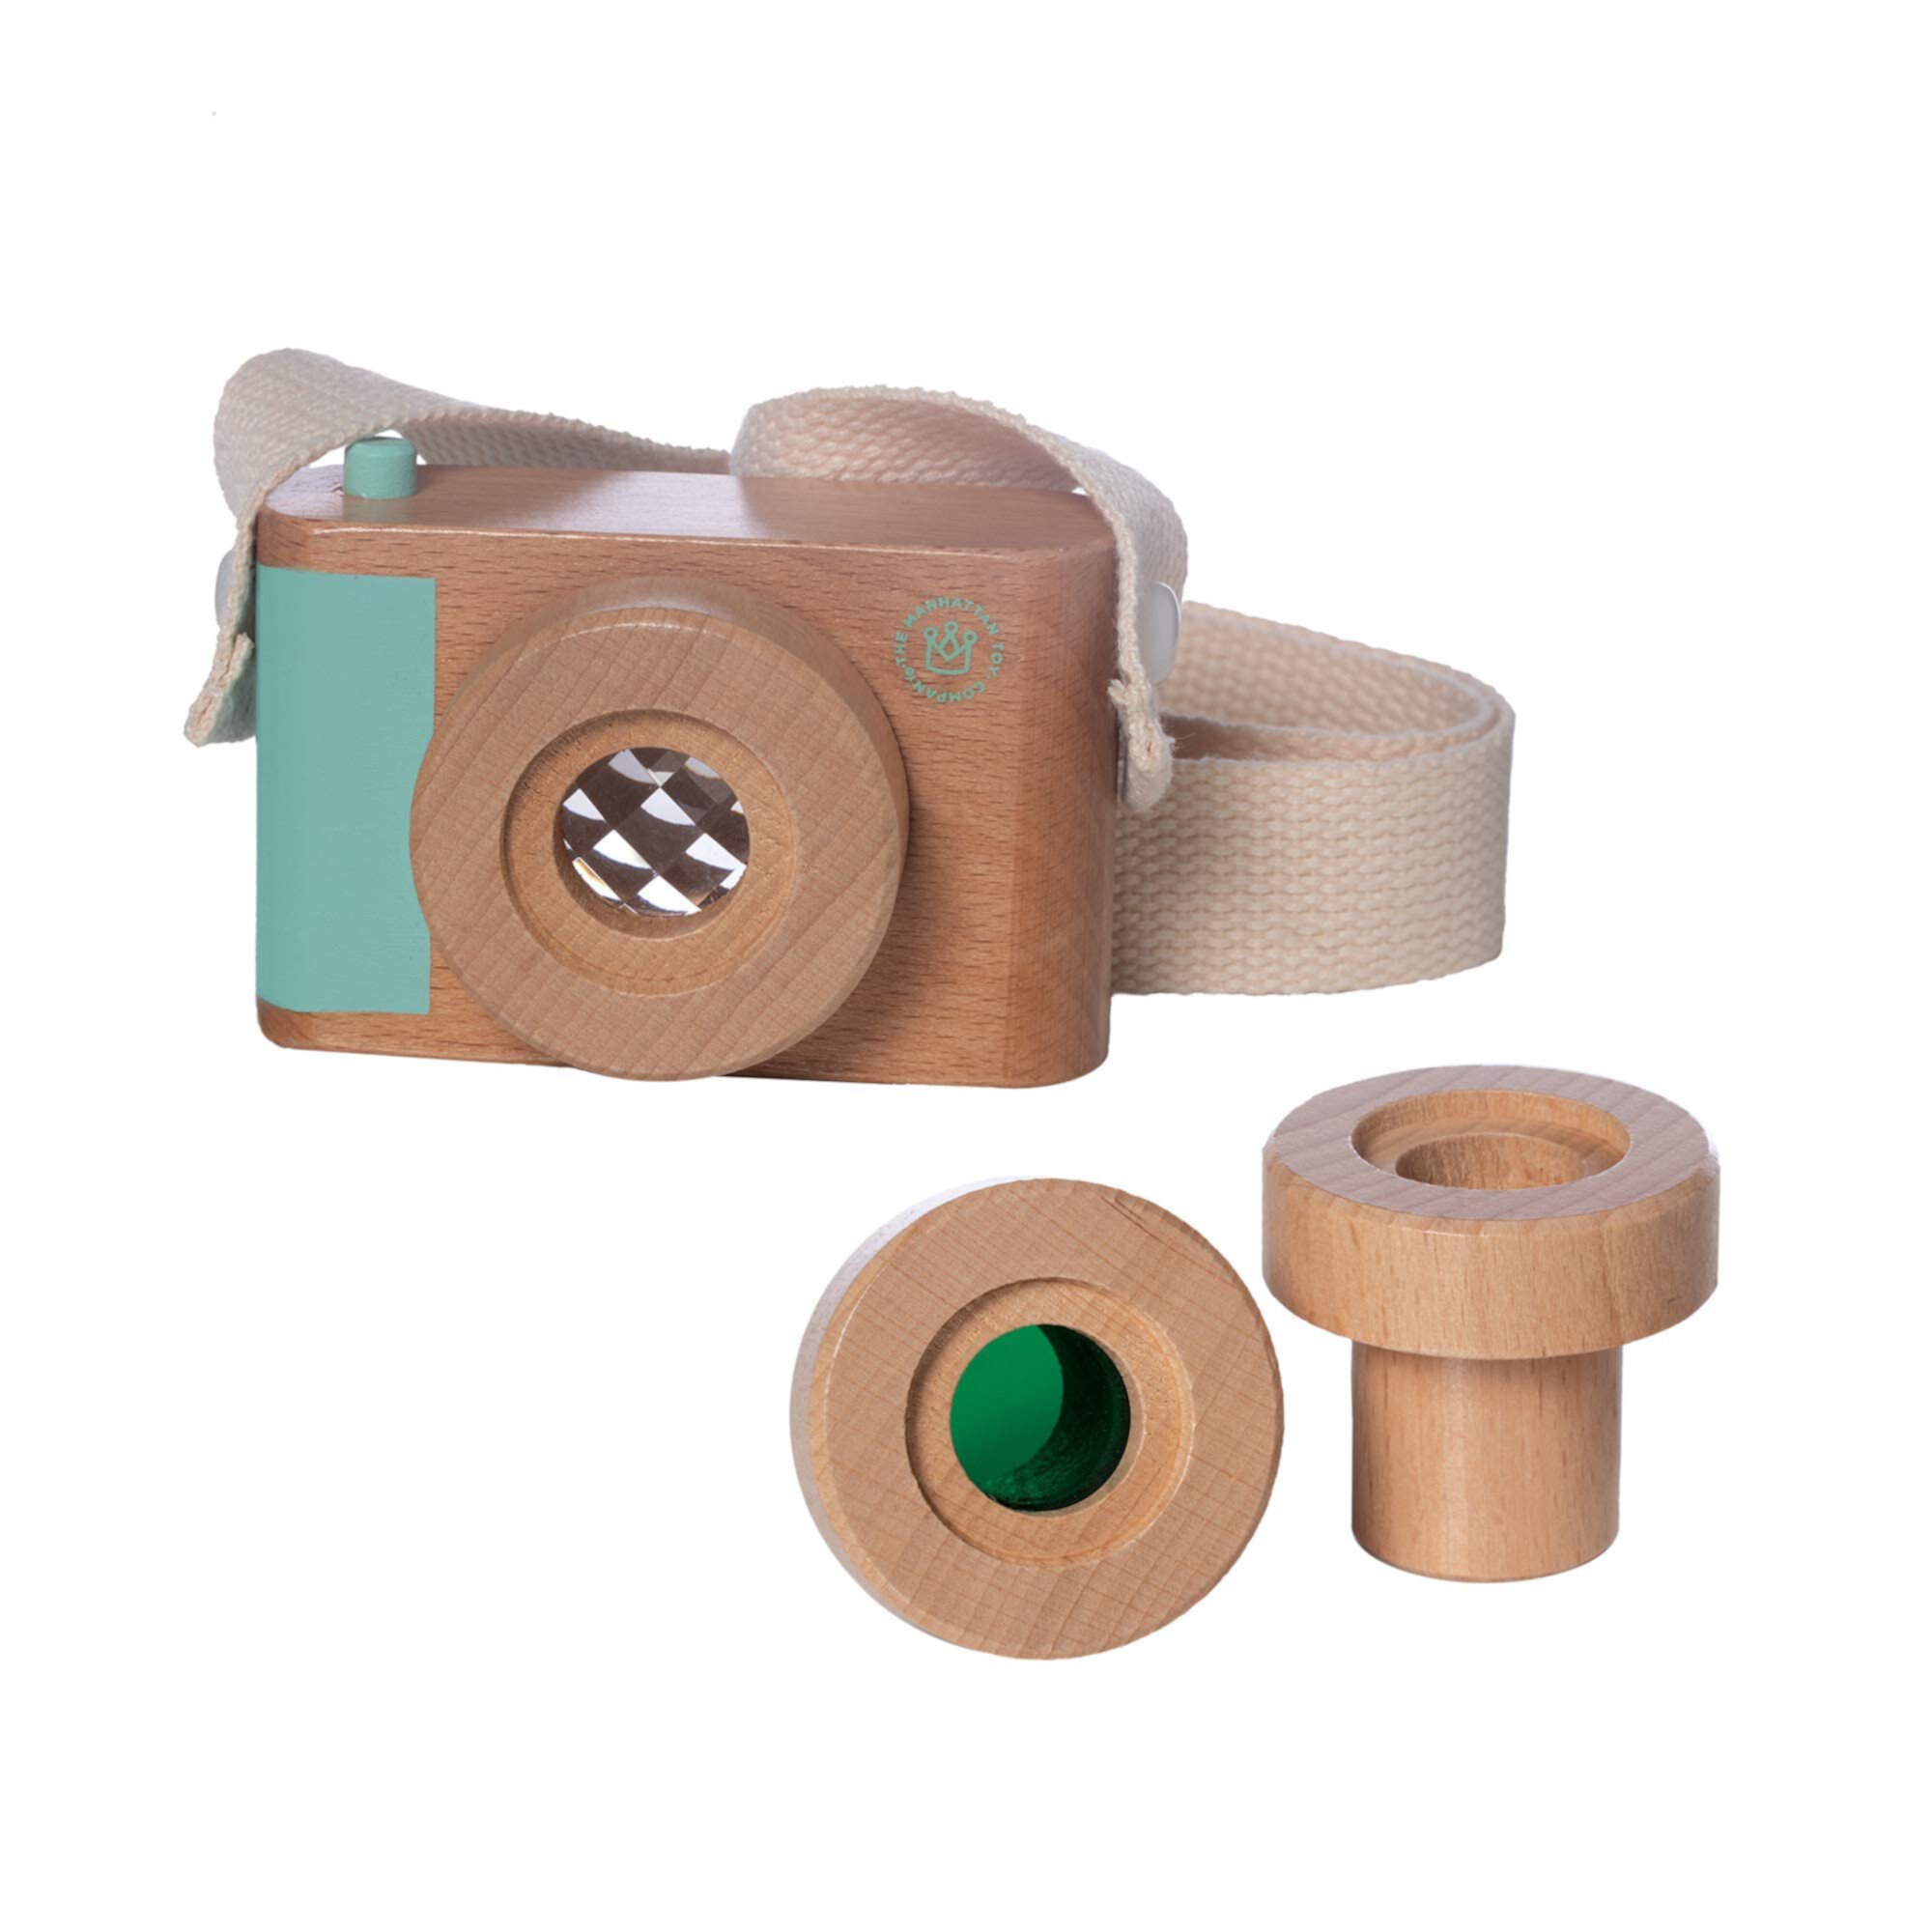 Manhattan Toy Natural Historian Деревянная камера Притворись временем, играй с прозрачными, зелеными и калейдоскопическими линзами Manhattan Toy